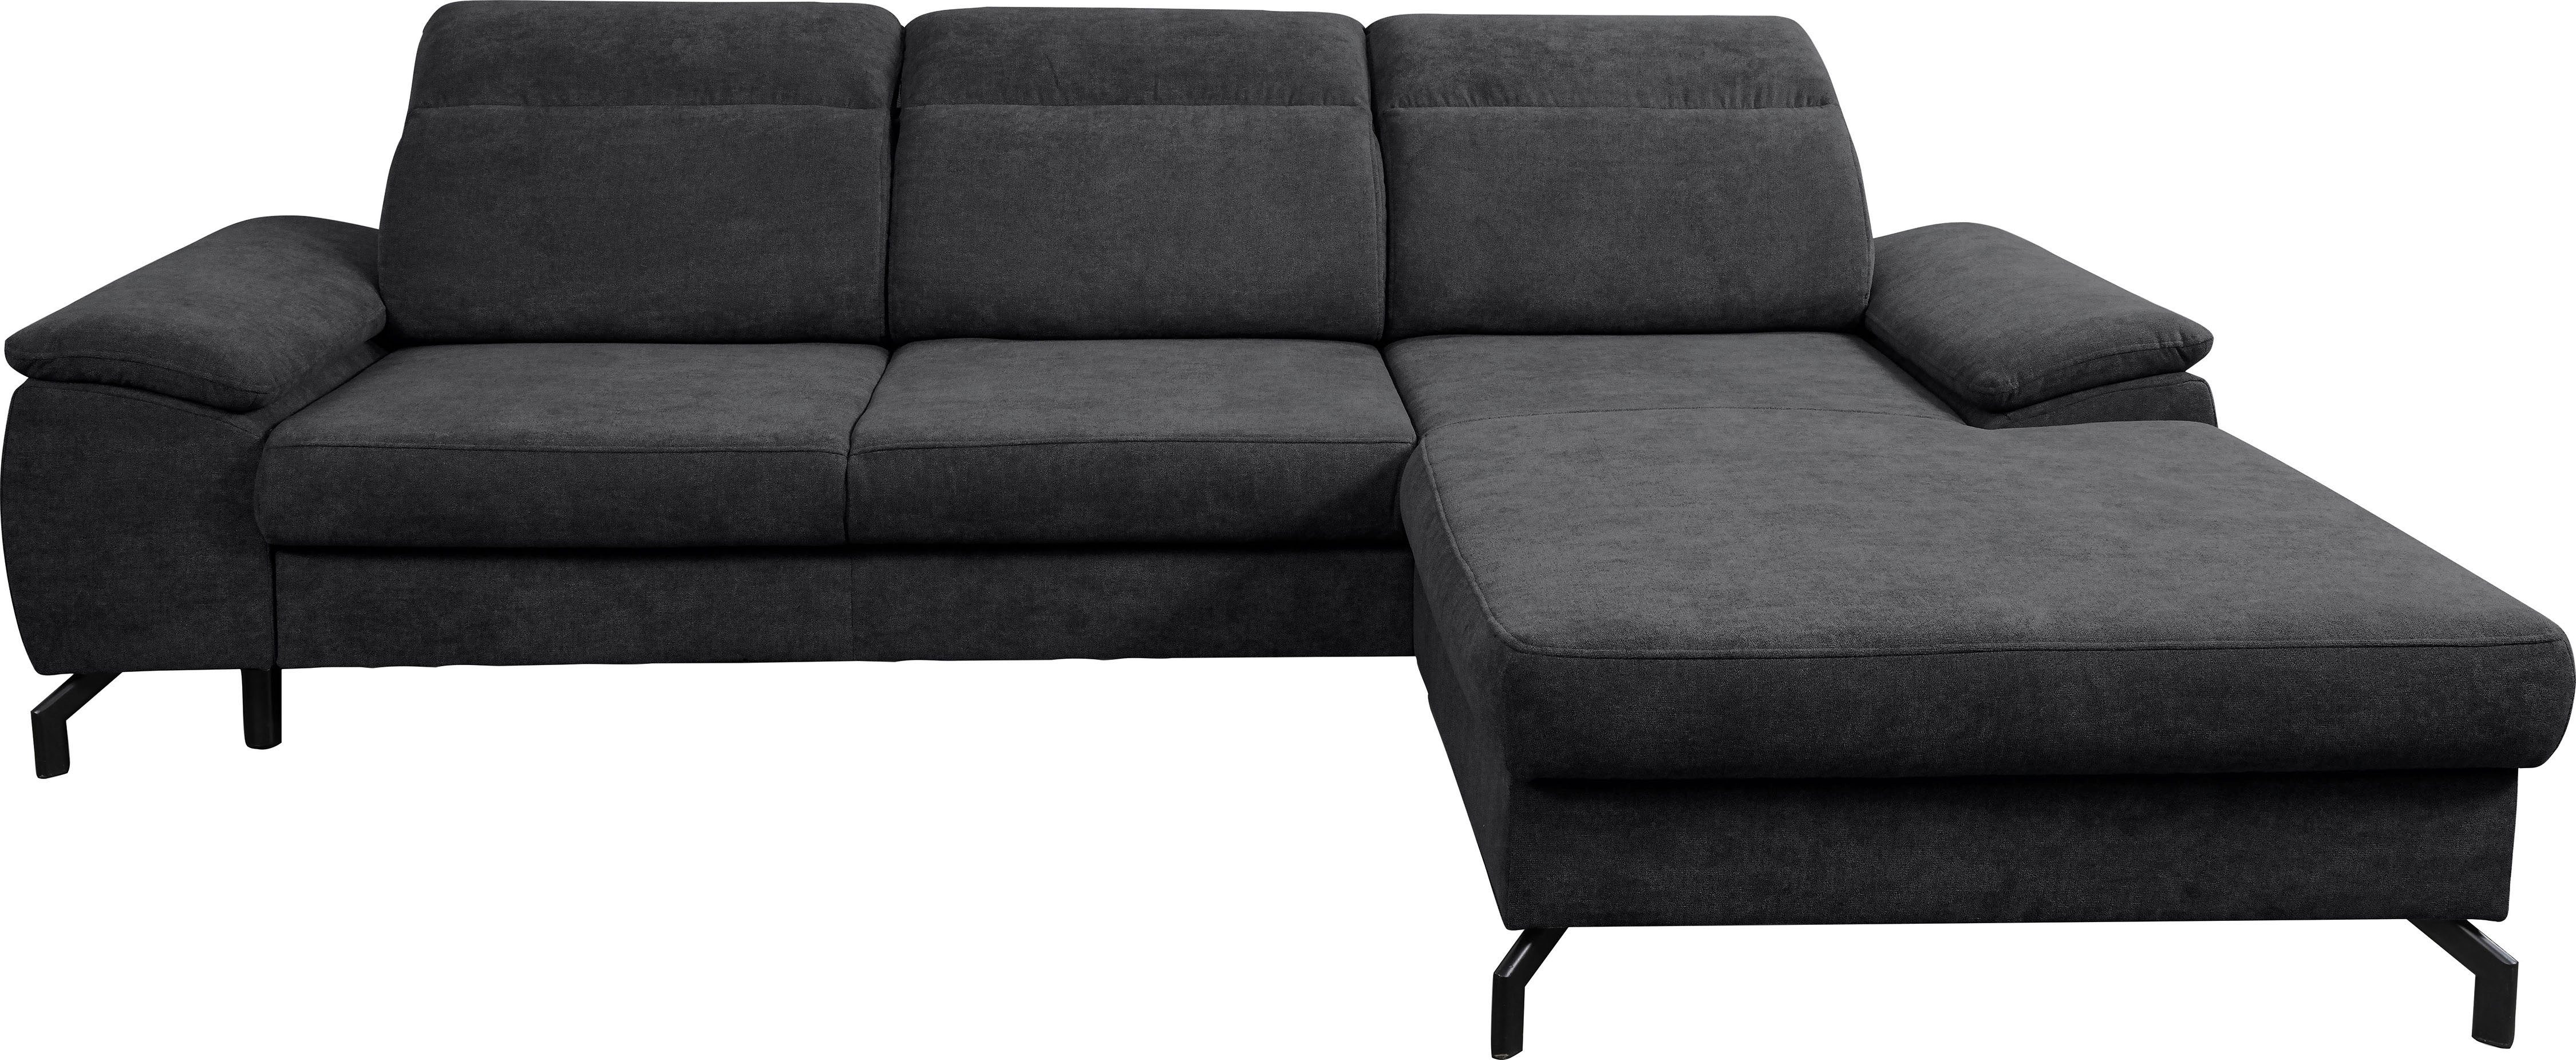 WERK2 Ecksofa Panama, Modernes Sofa mit Schlaffunktion, Bettkasten, Kopfteile verstellbar Anthrazit | Anthrazit | Anthrazit